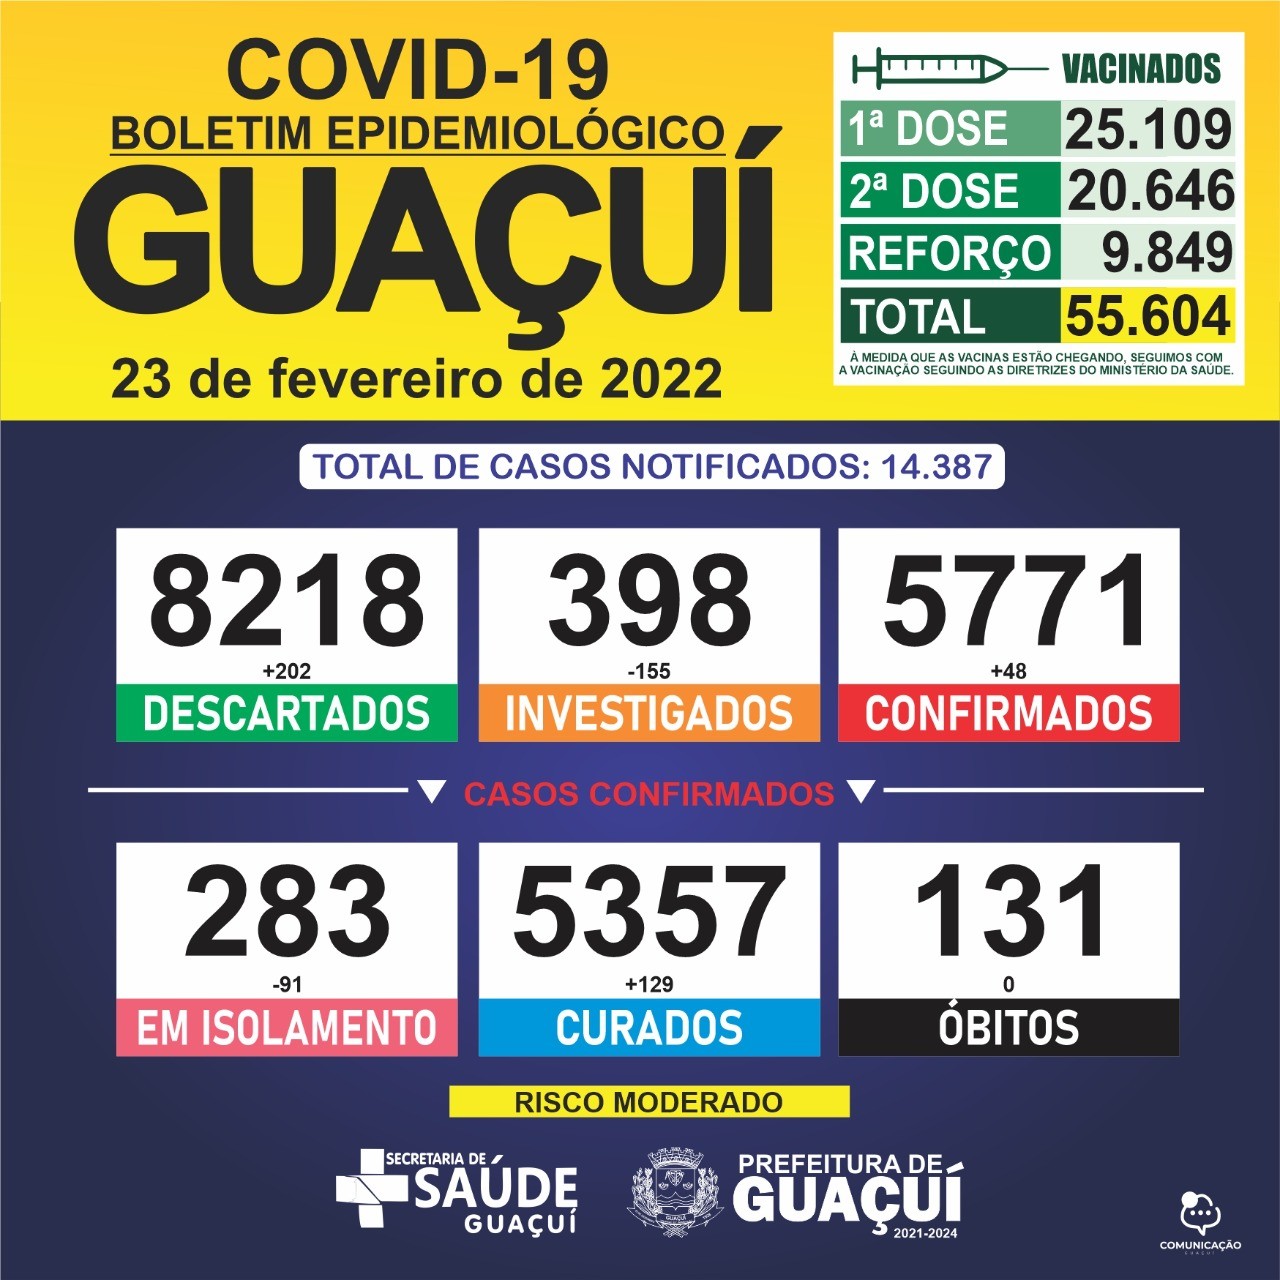 Boletim Epidemiológico 23/02/2022: Guaçuí registra 48 casos confirmados e 129 curados